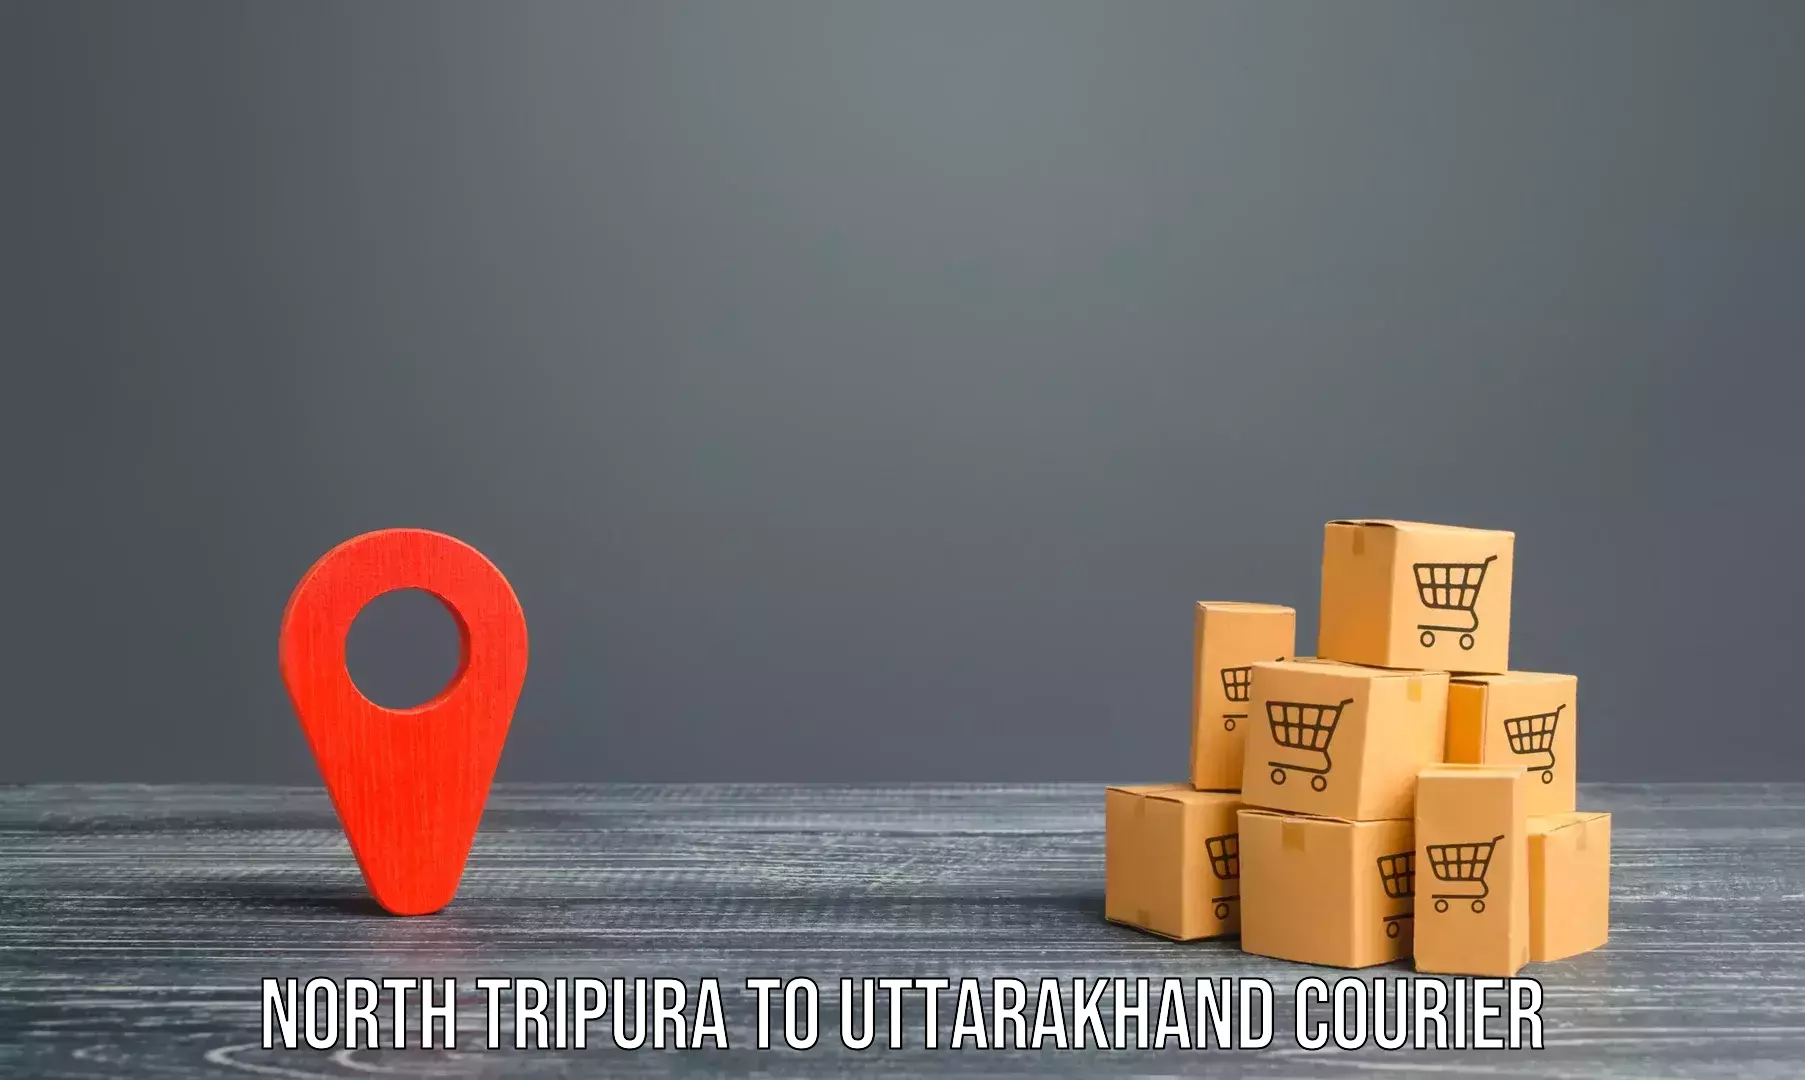 Quick furniture moving North Tripura to Tehri